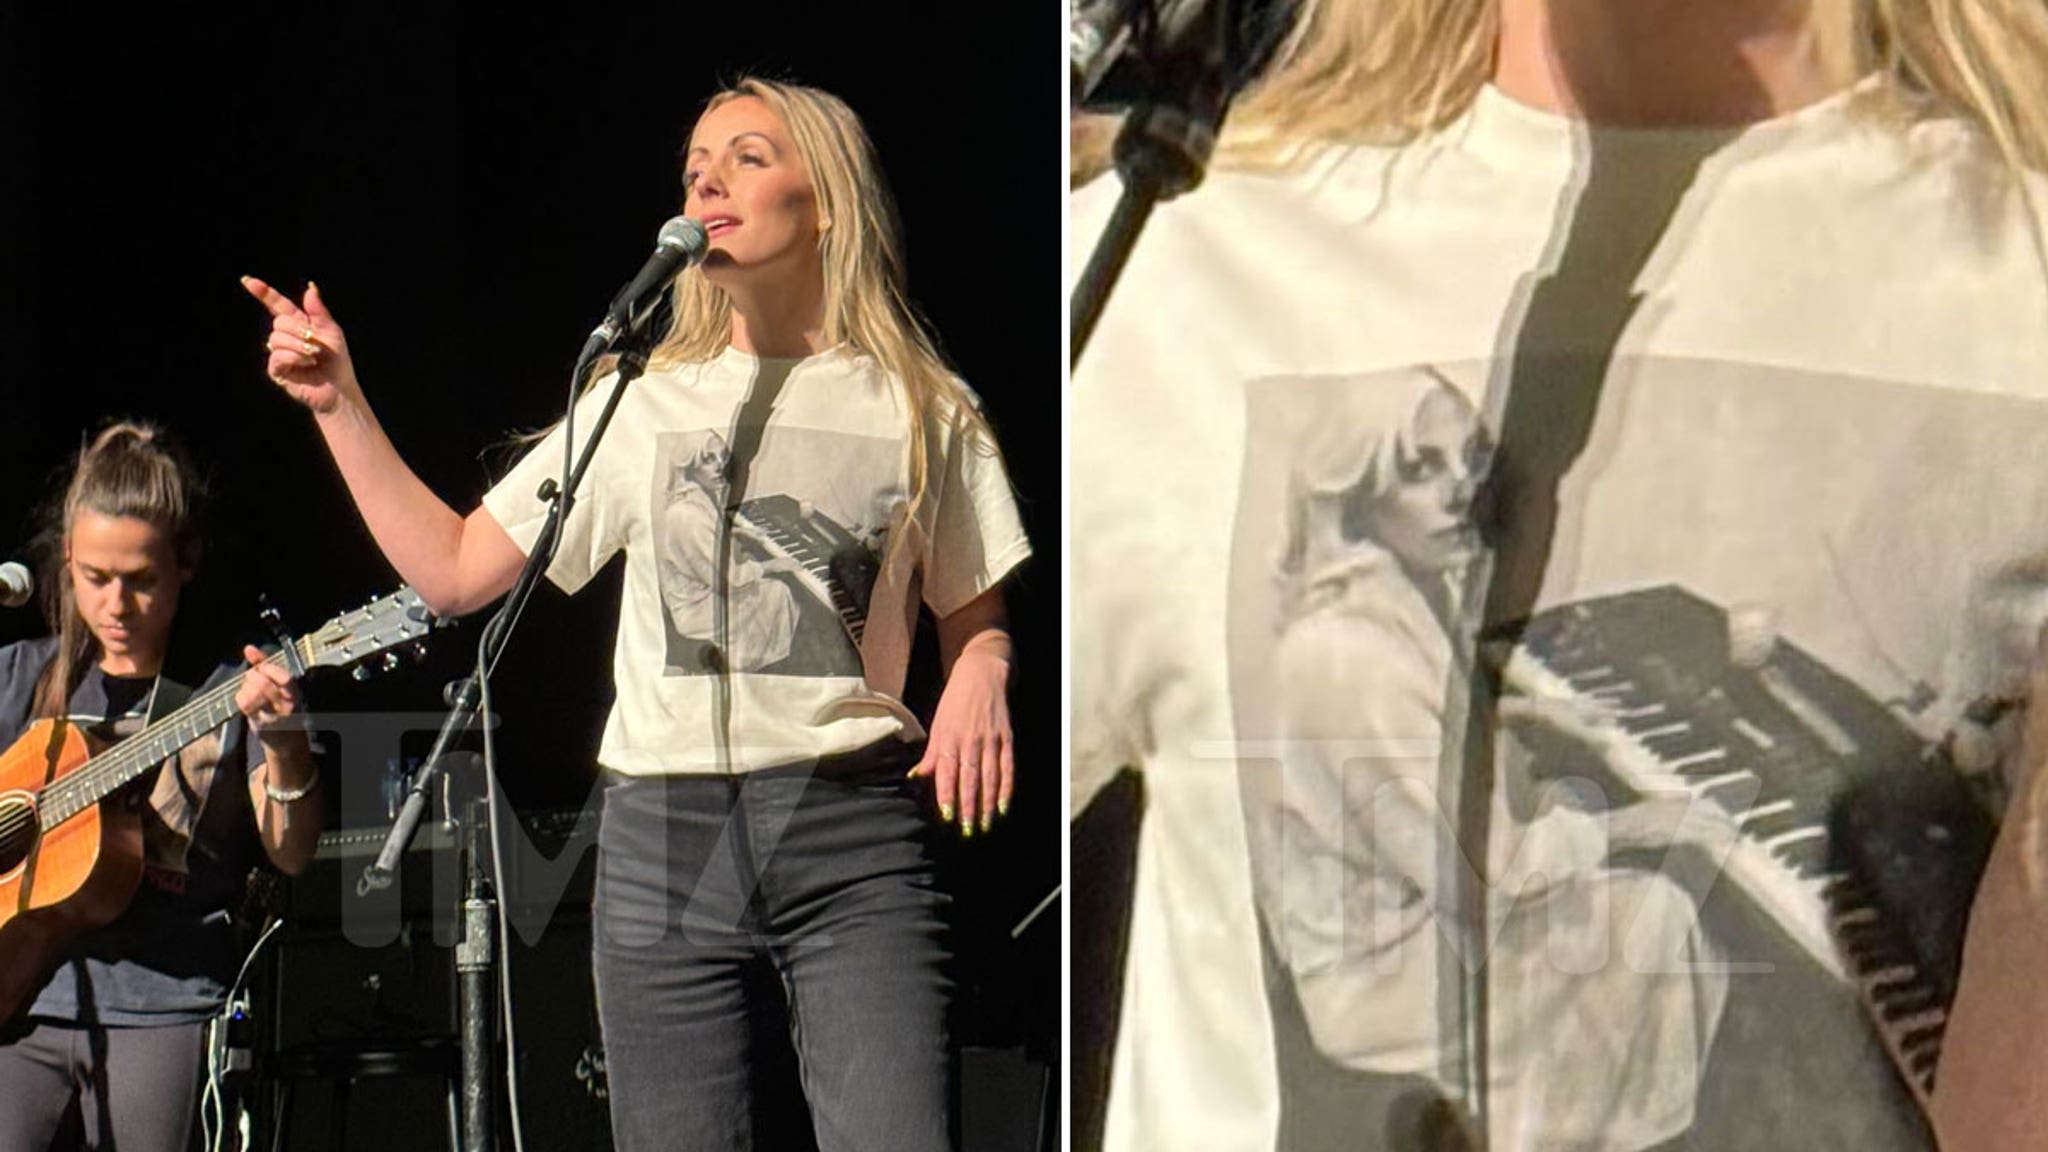 Carly Waddell, ancienne élève de “Bachelor”, porte une chemise de Lady Gaga sur scène après l’avoir critiquée